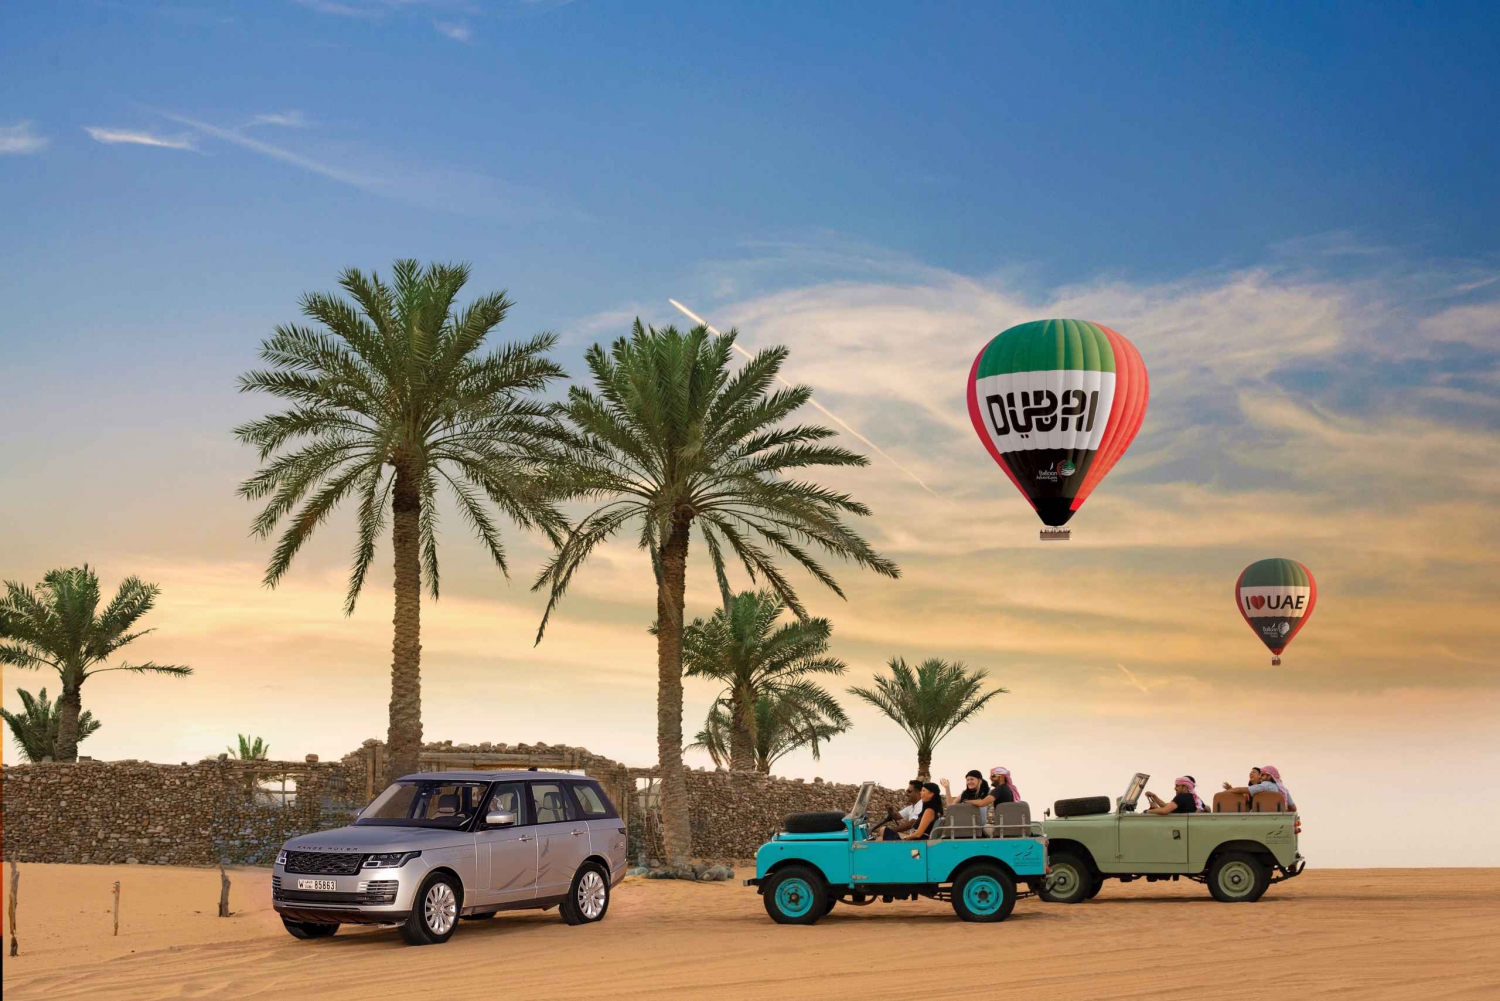 Dubai: Sunrise Balloon Flight with Breakfast & Falcon Photo